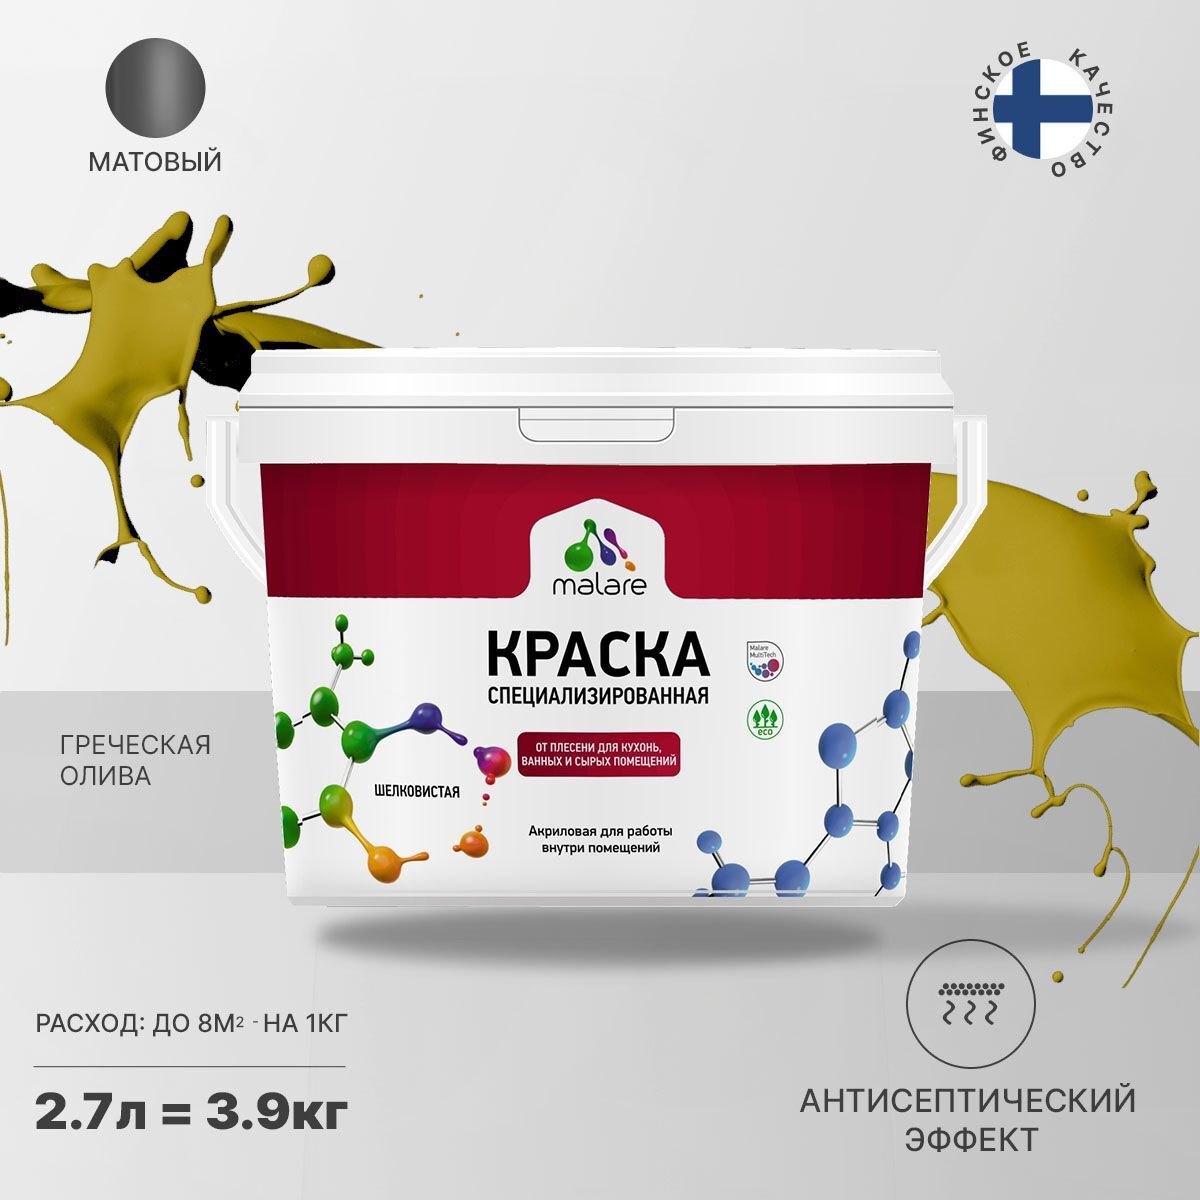 Краска Malare Professional Biosept от плесени и грибка, Акриловая, 3,9 кг греческая олива